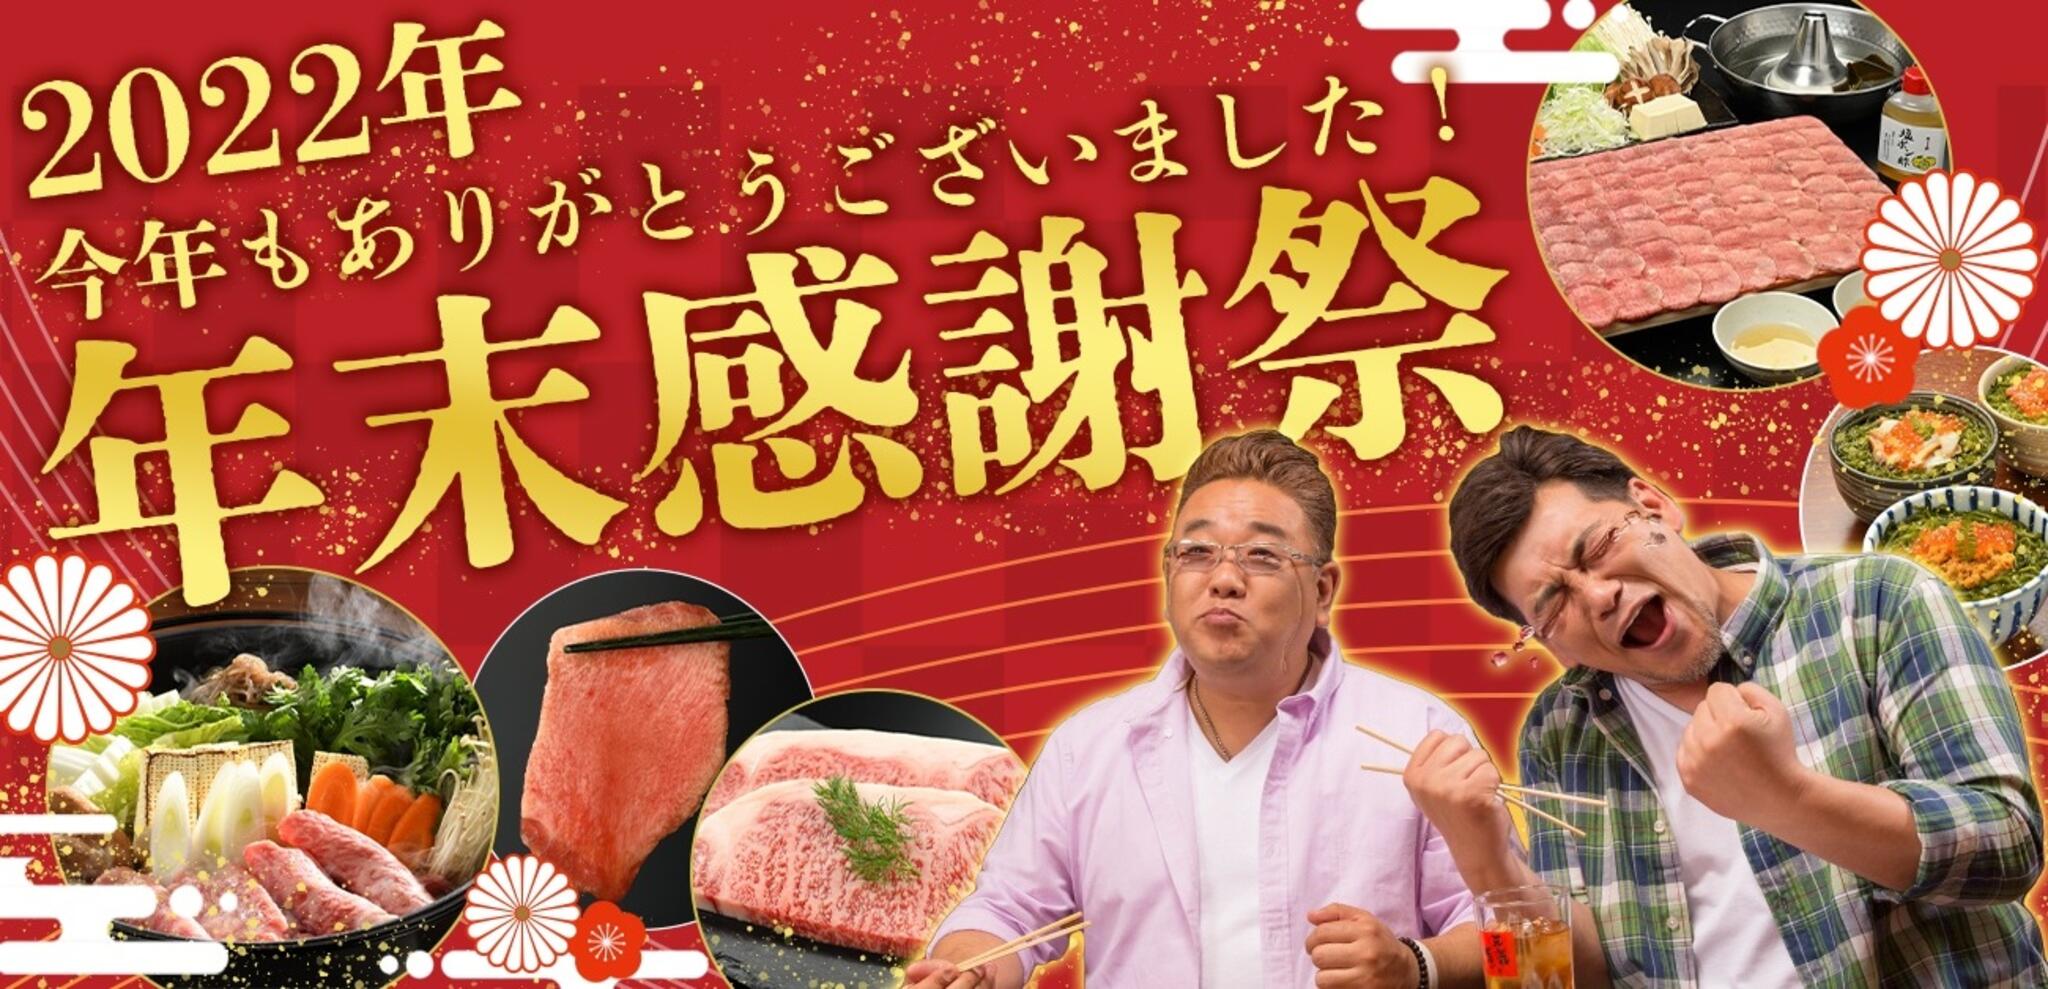 焼肉冷麺やまなか家 山王臨海店からのお知らせ(🏳‍🌈2022年《オンラインショップ》年末感謝祭)に関する写真